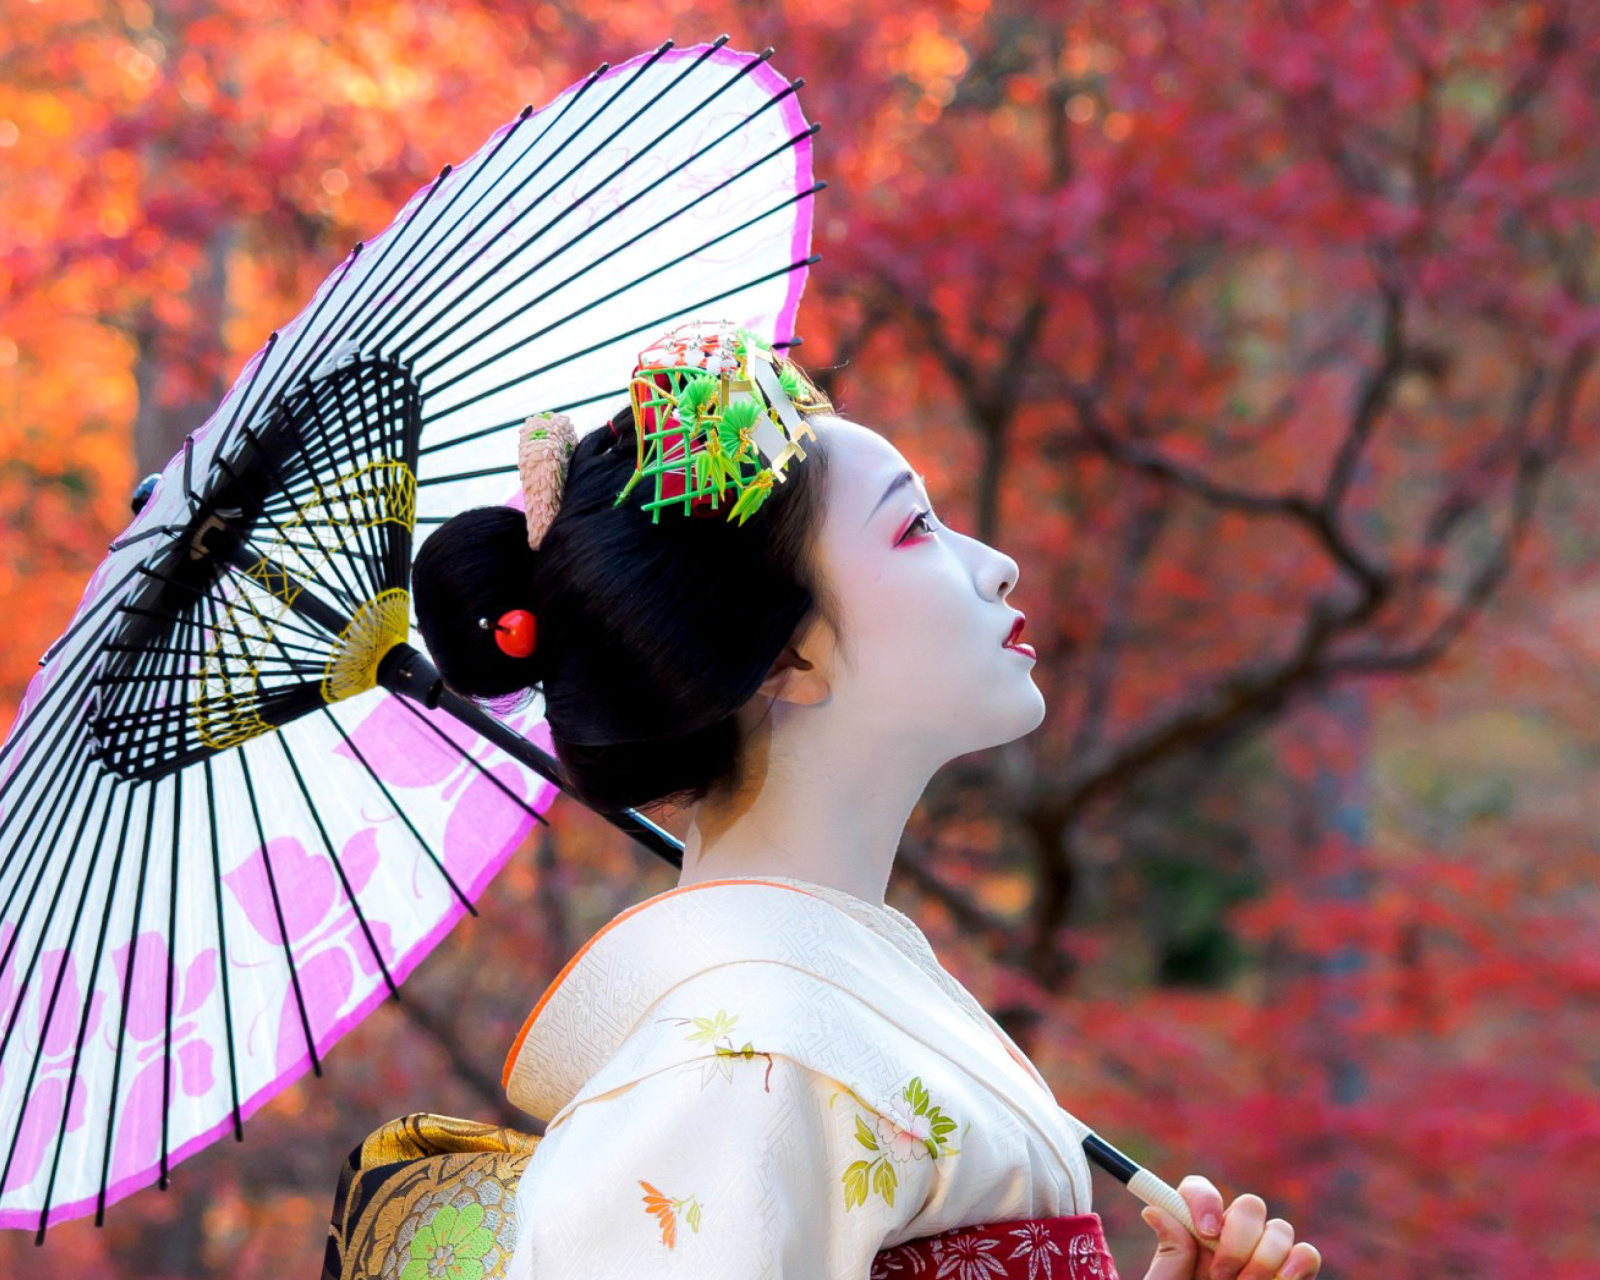 Das Japanese Girl with Umbrella Wallpaper 1600x1280